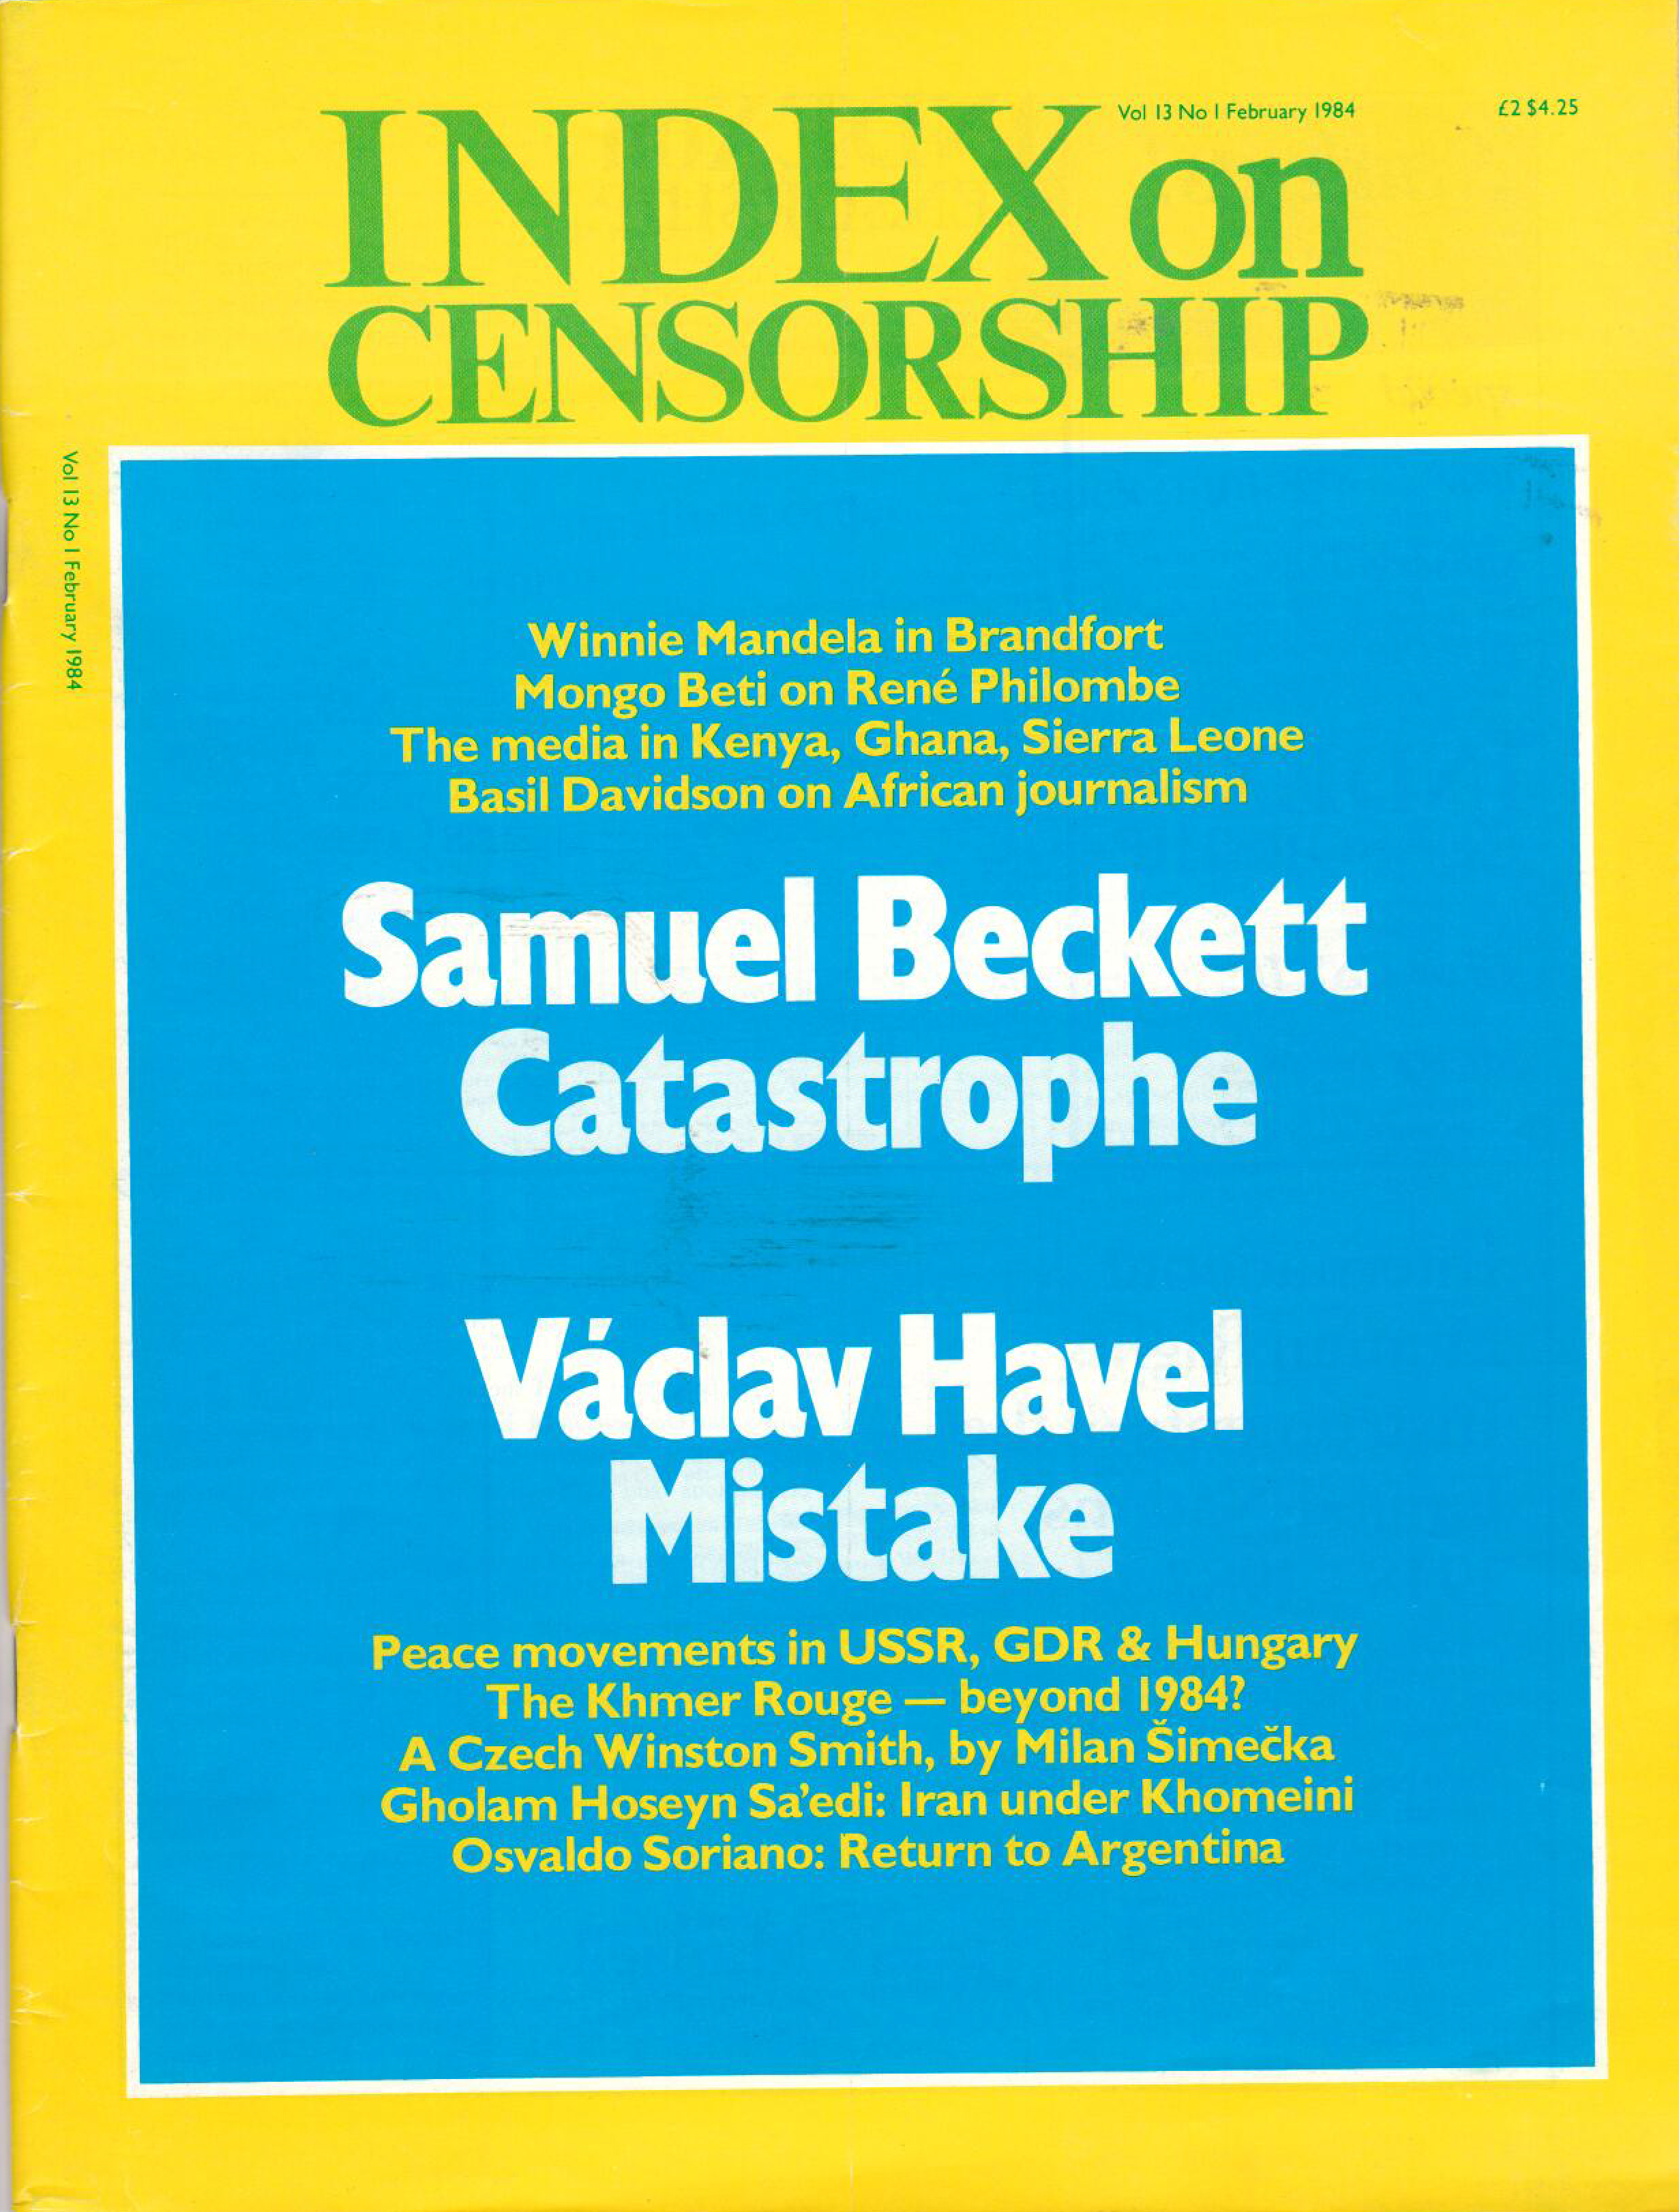 Samuel Beckett and Vaclav Havel